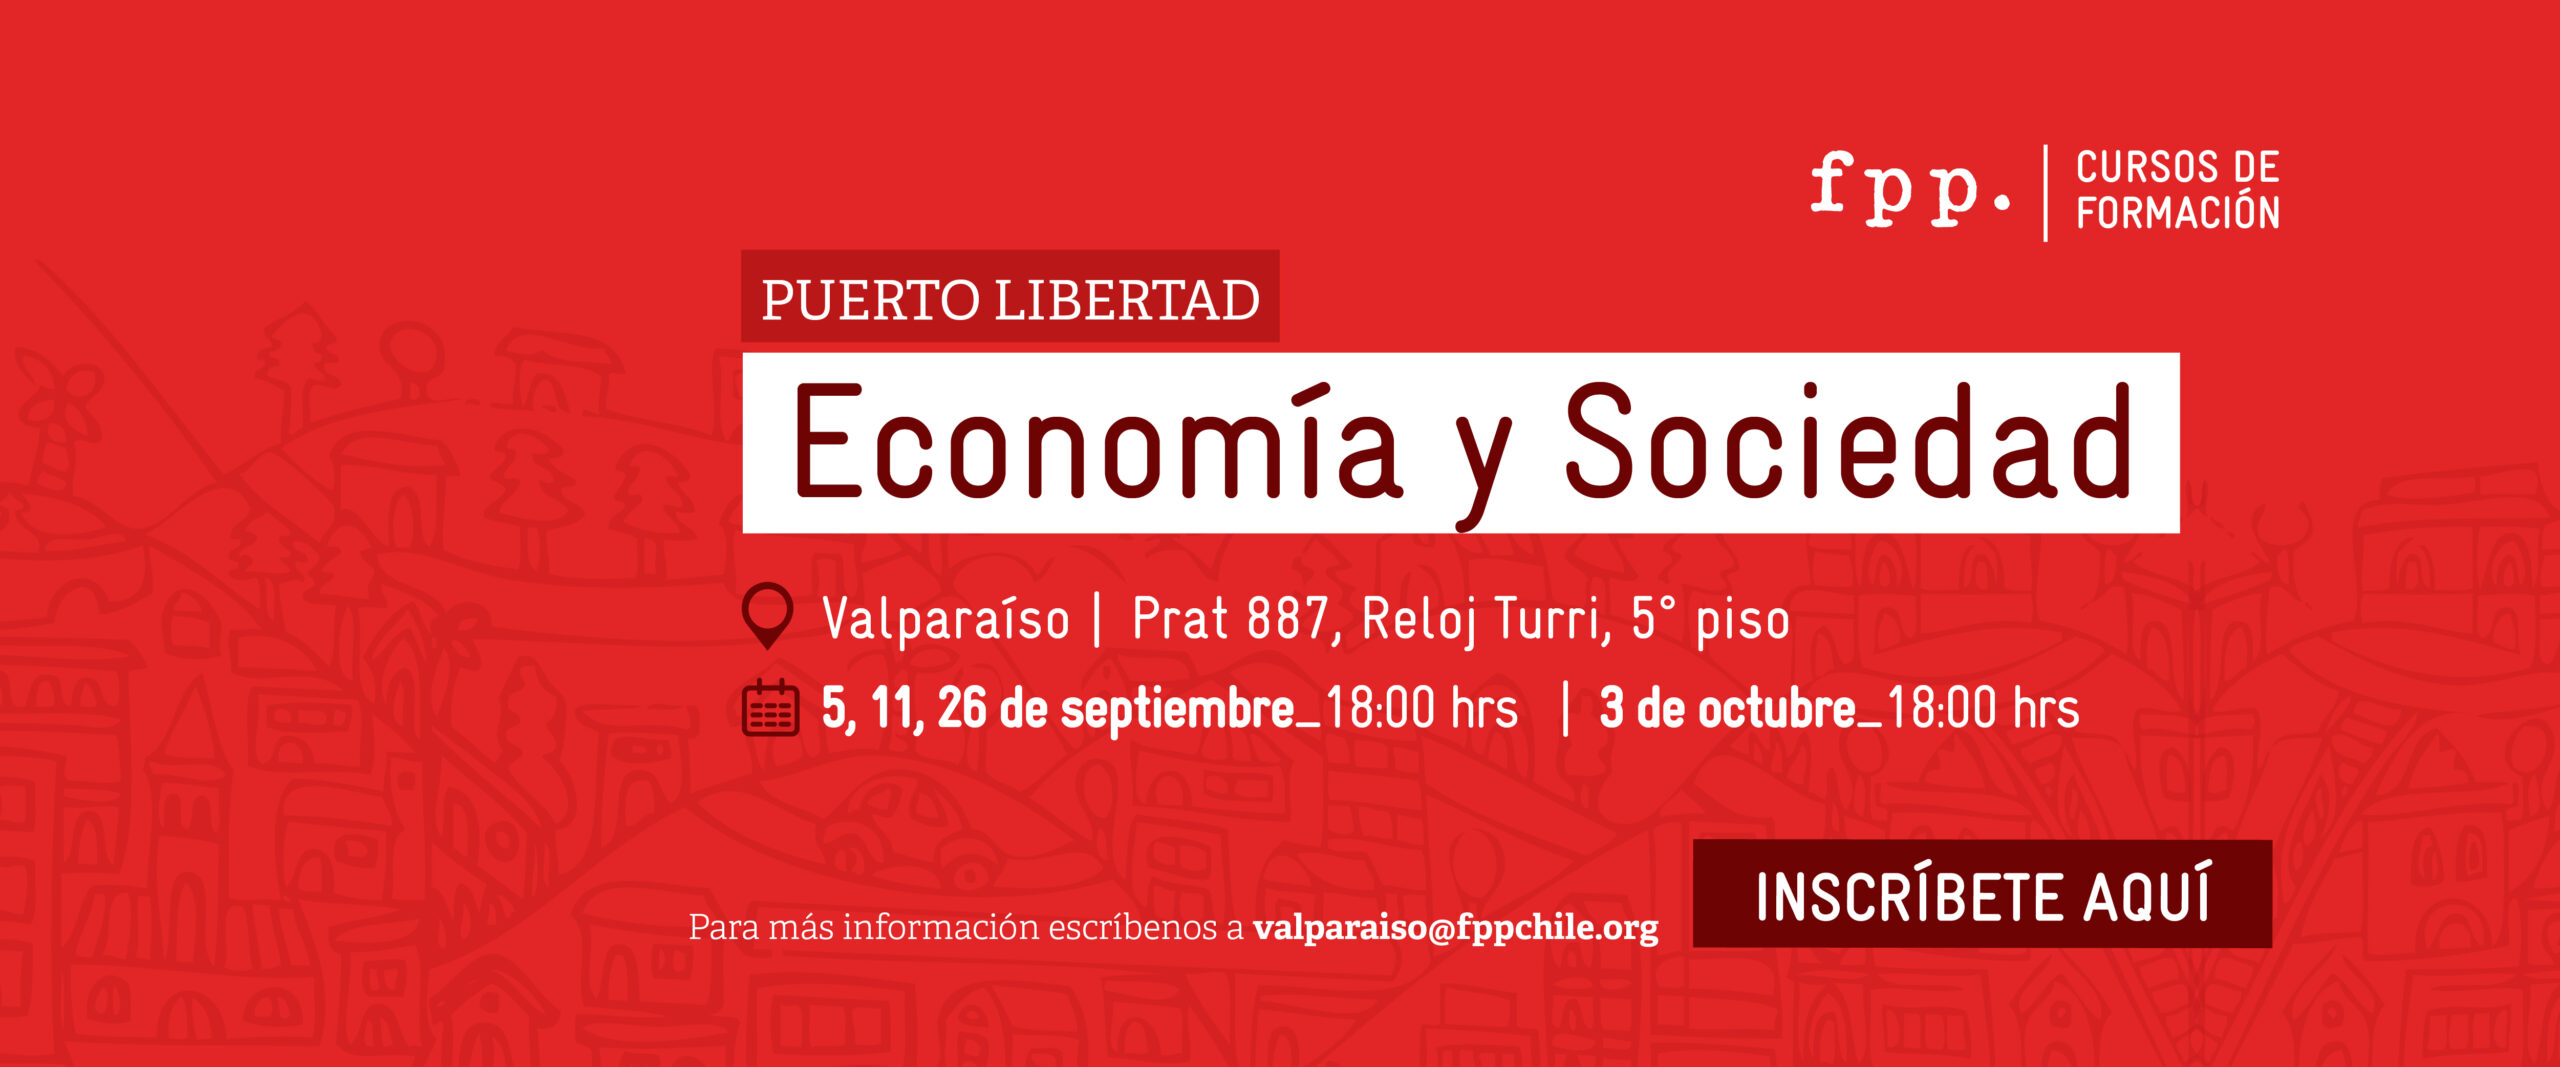 Curso: Economía y Sociedad - Valparaíso